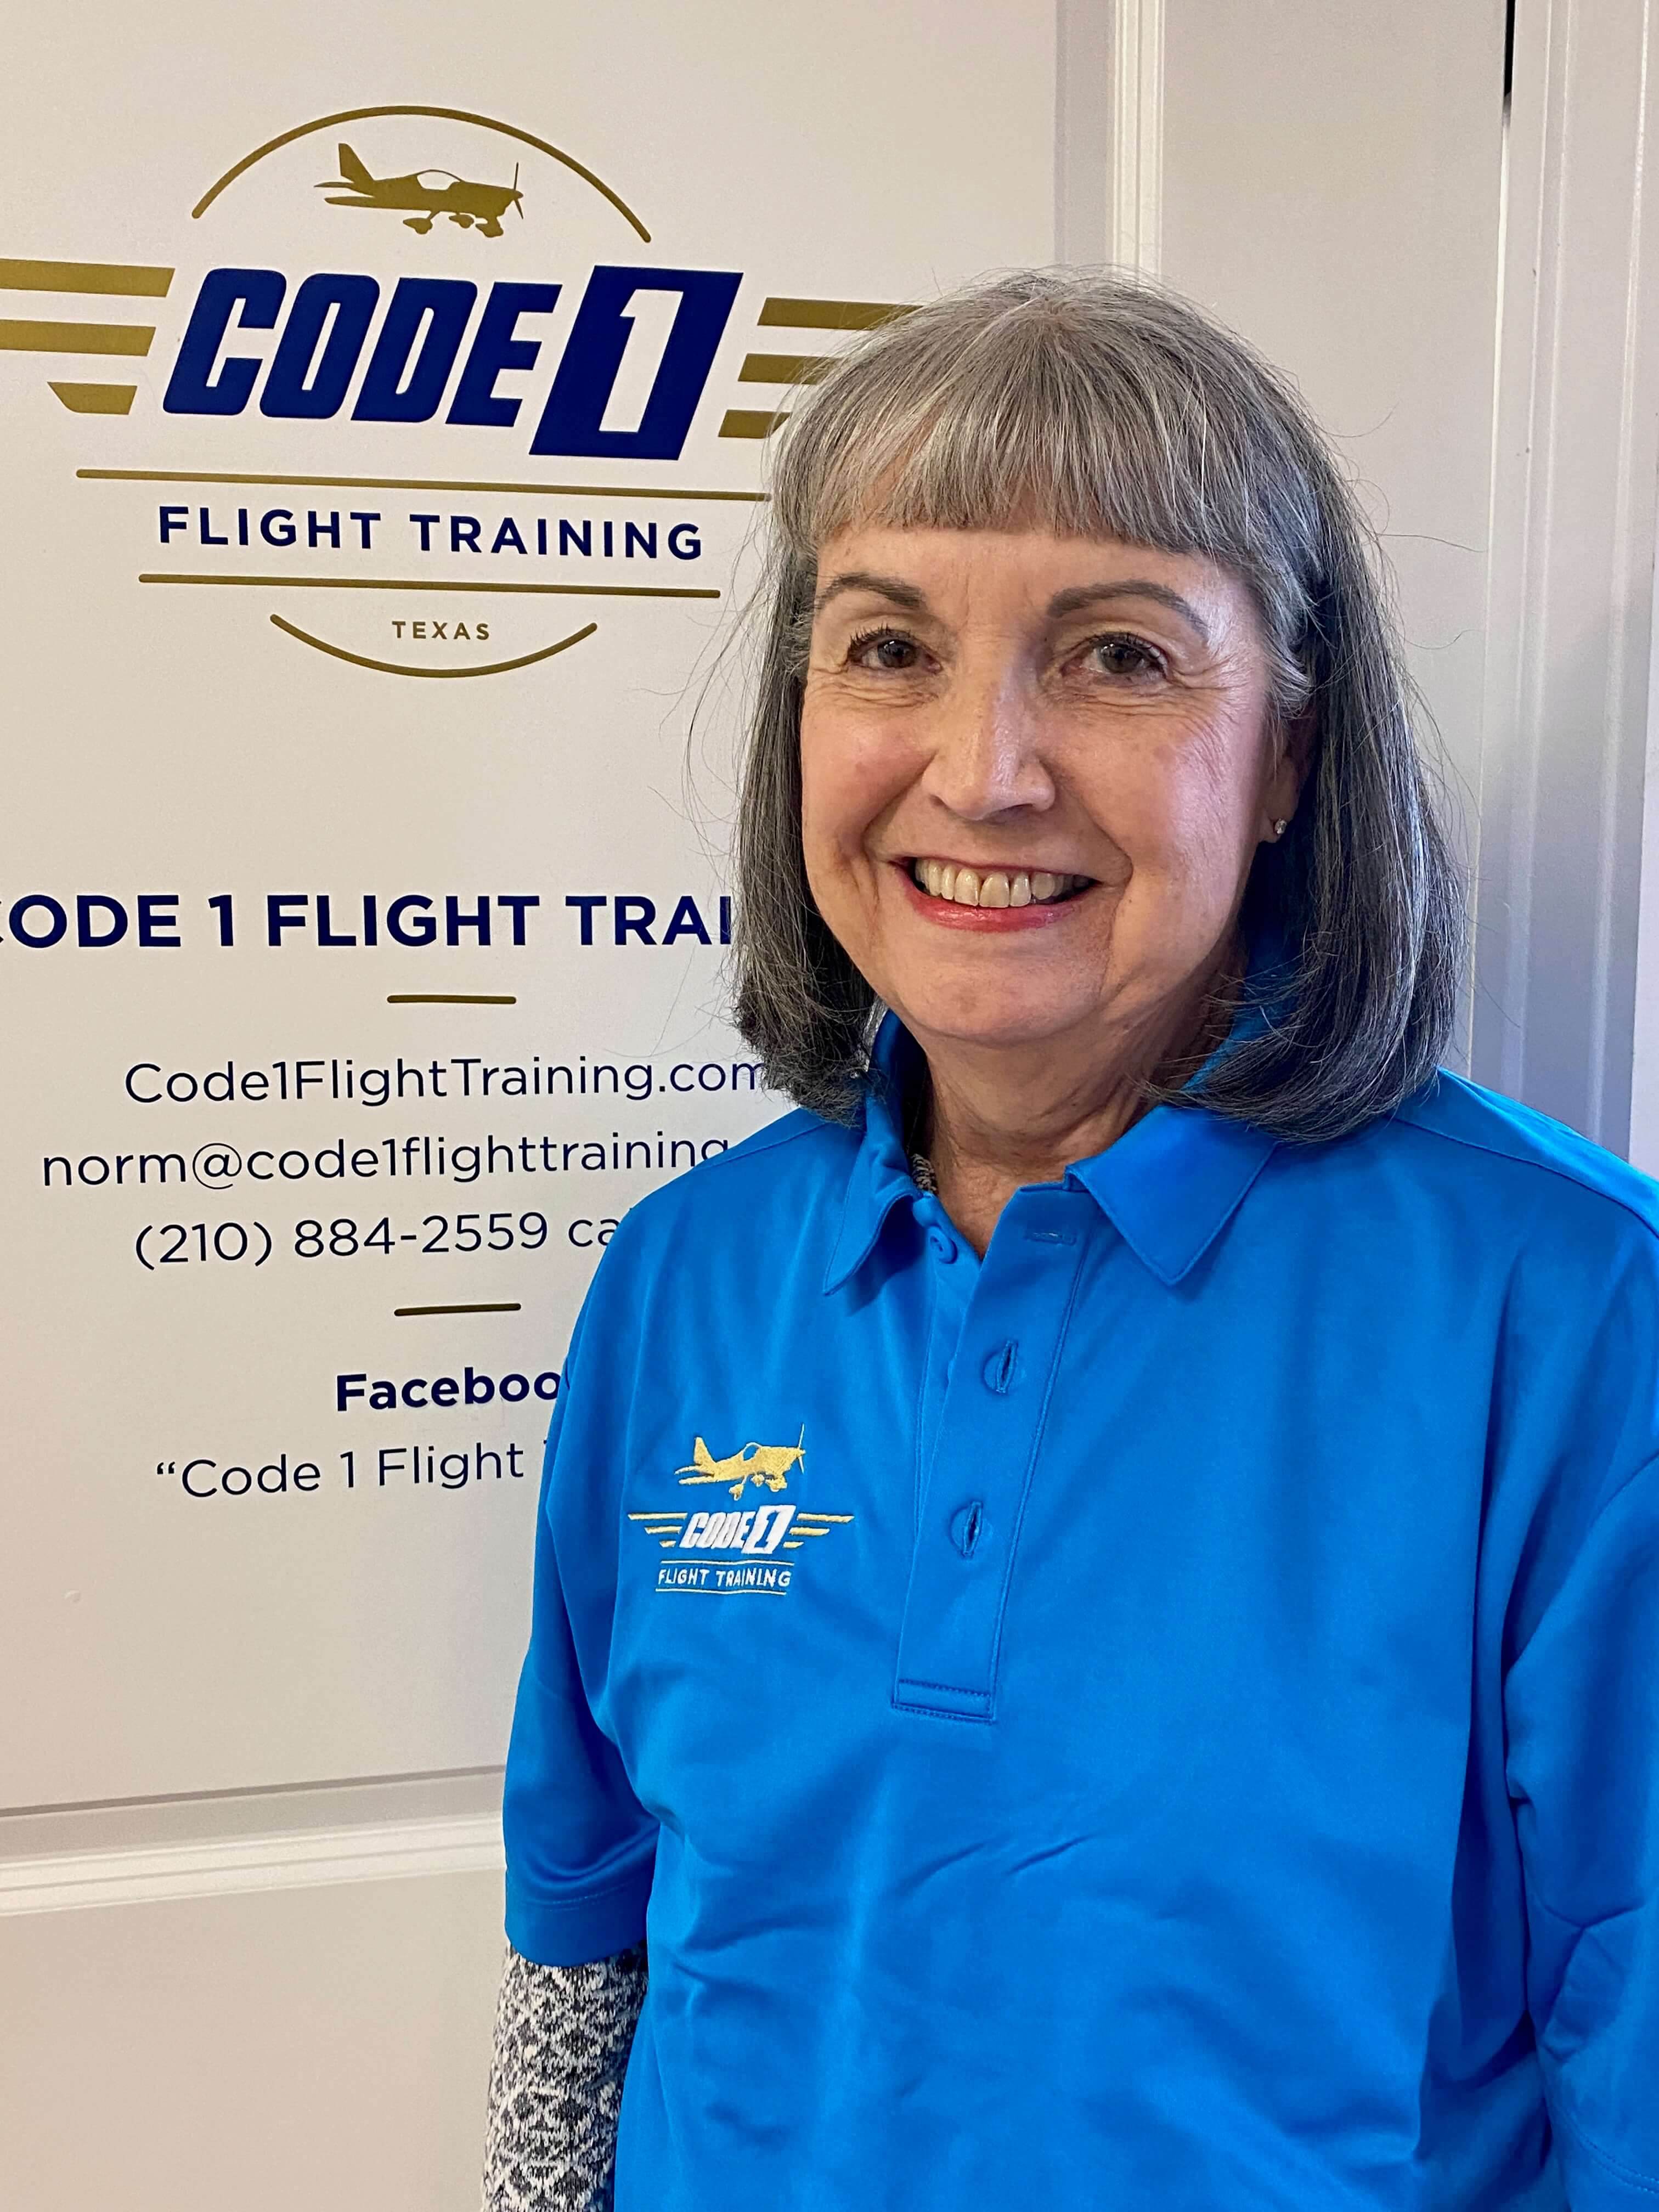 Code 1 Flight Training CFO Carol Rathje